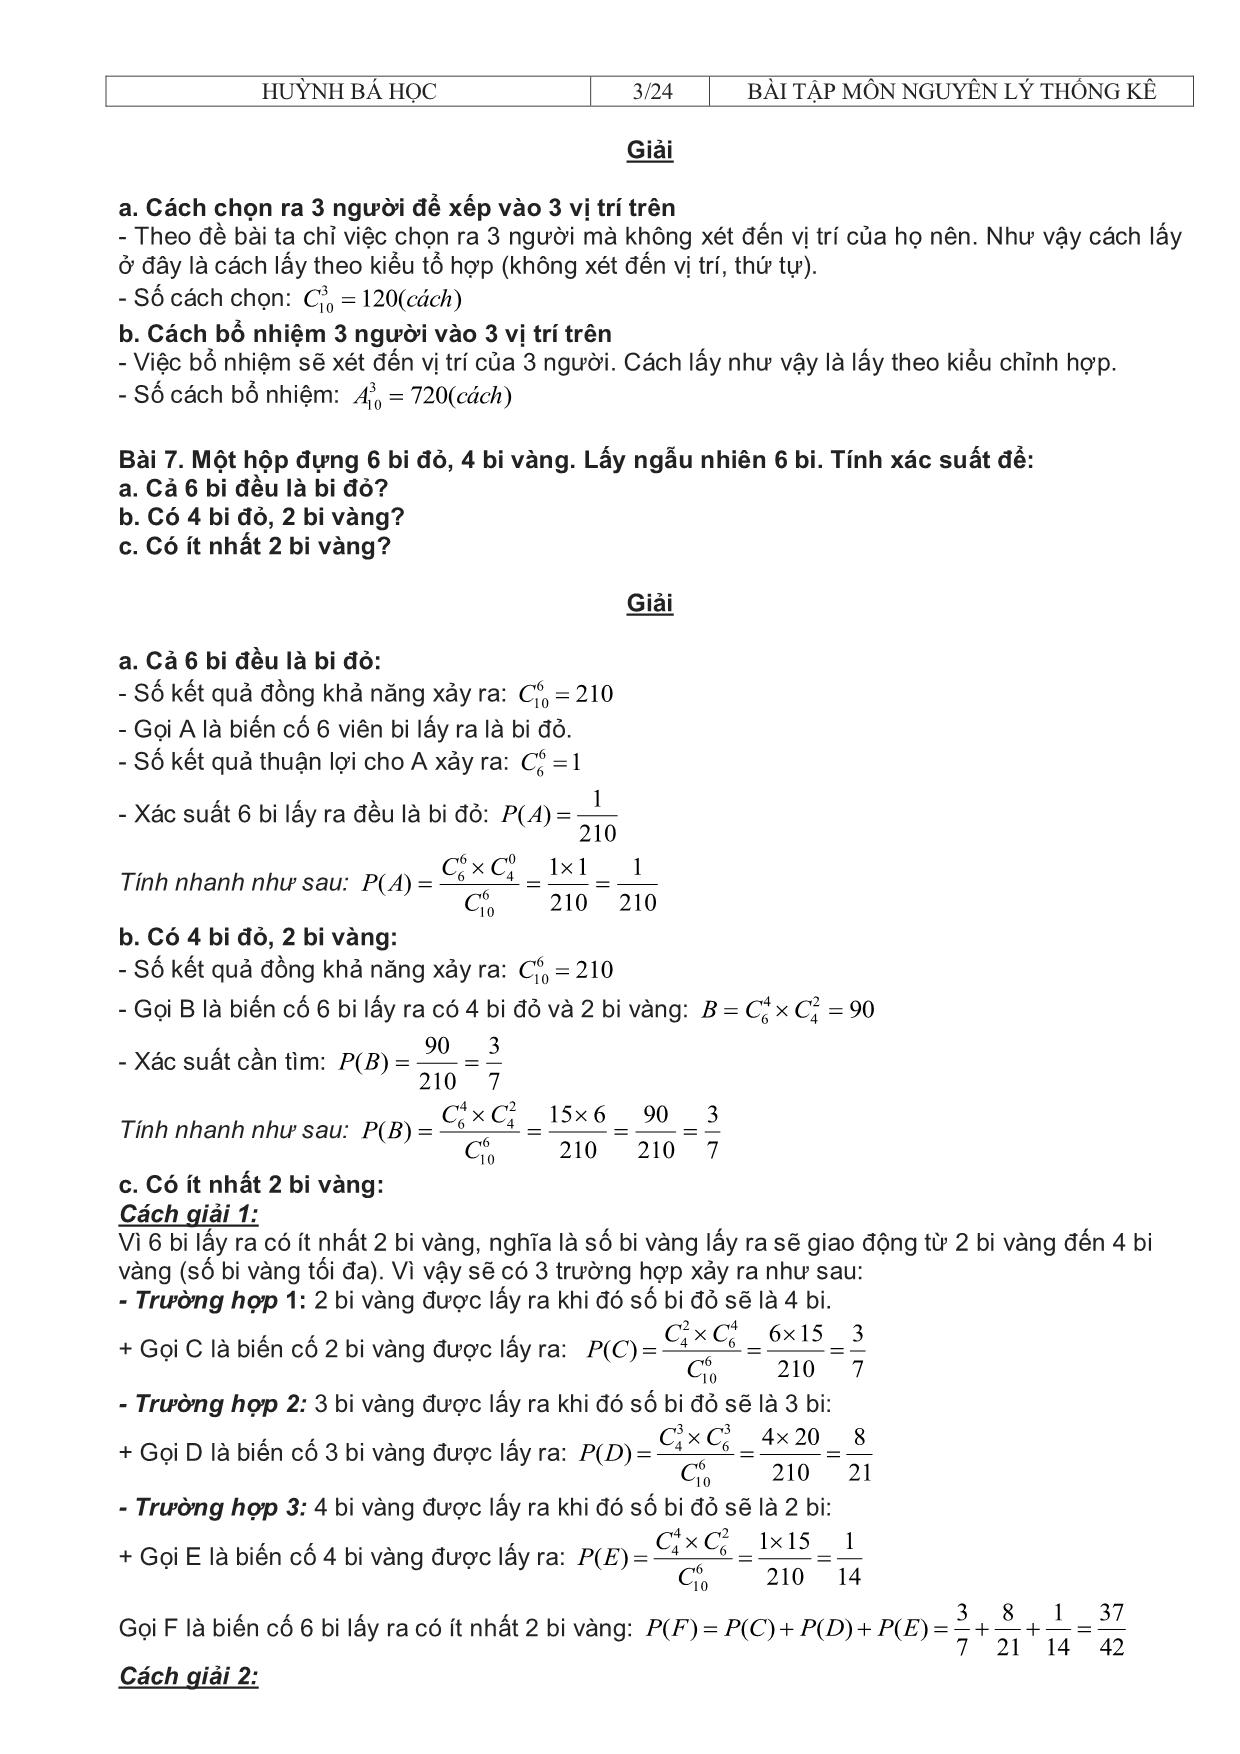 Bài tập môn nguyên lý thống kê trang 3